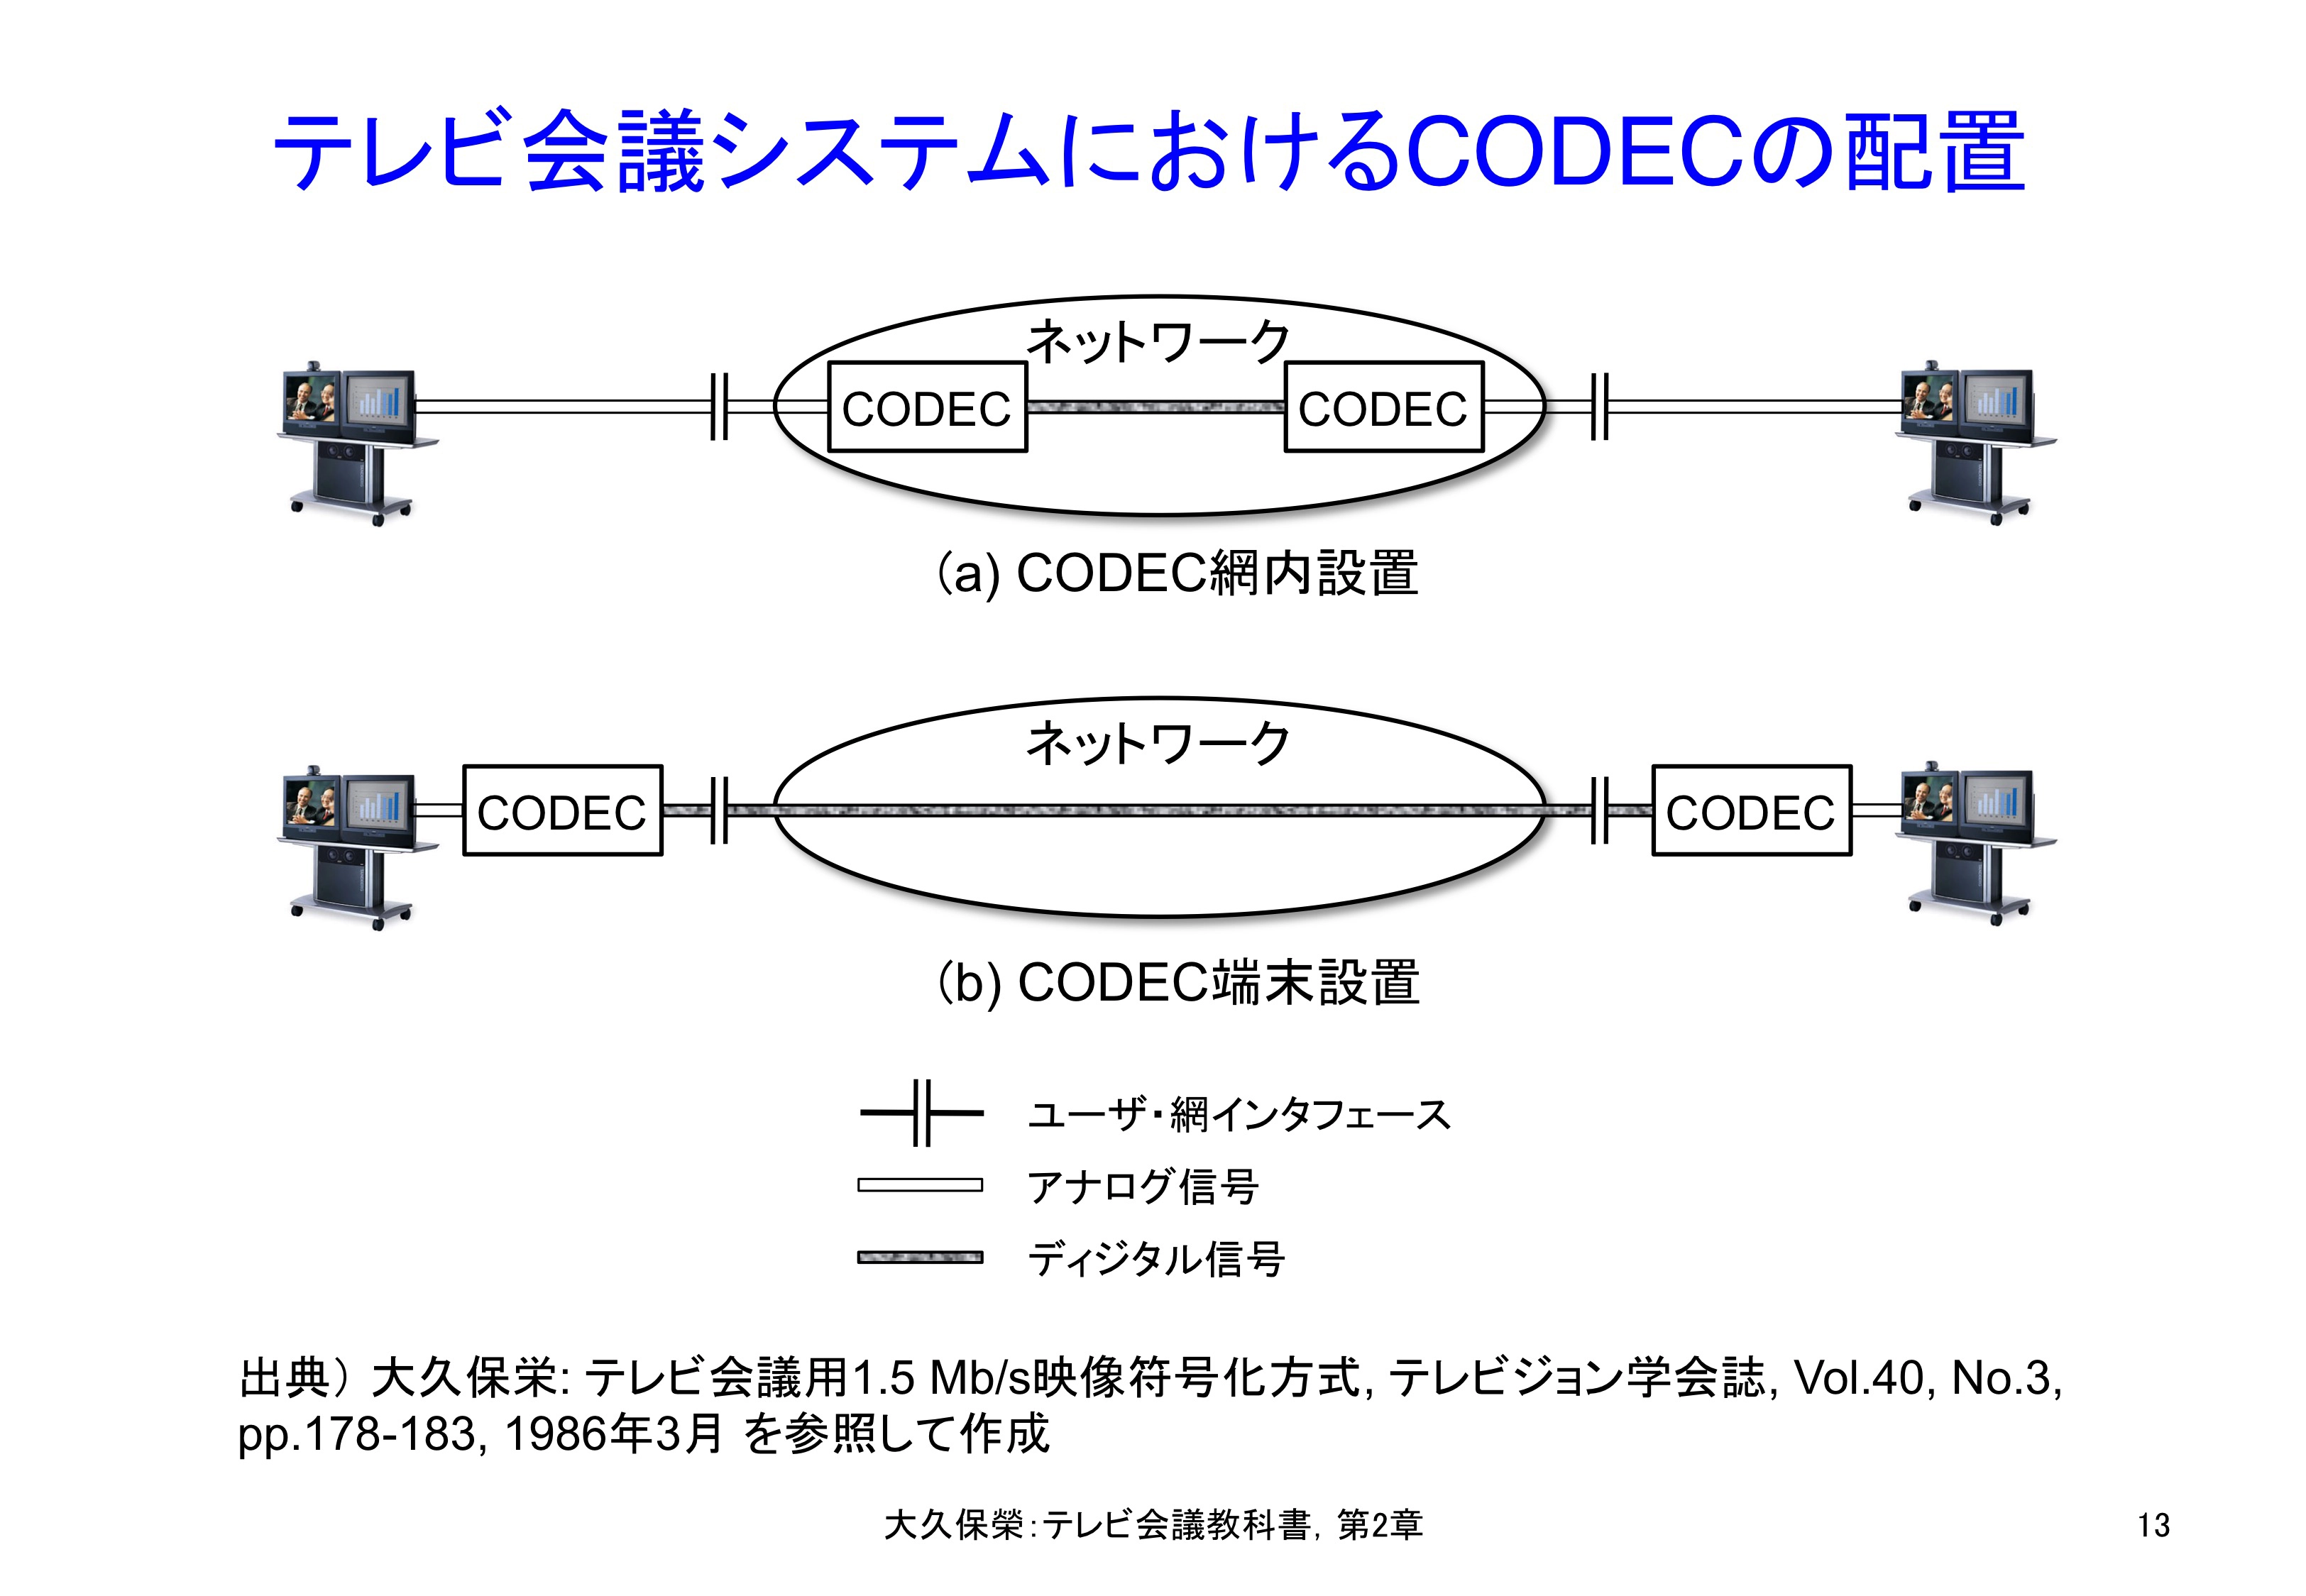 図2-13 映像codecの配置から見たテレビ会議システム構成